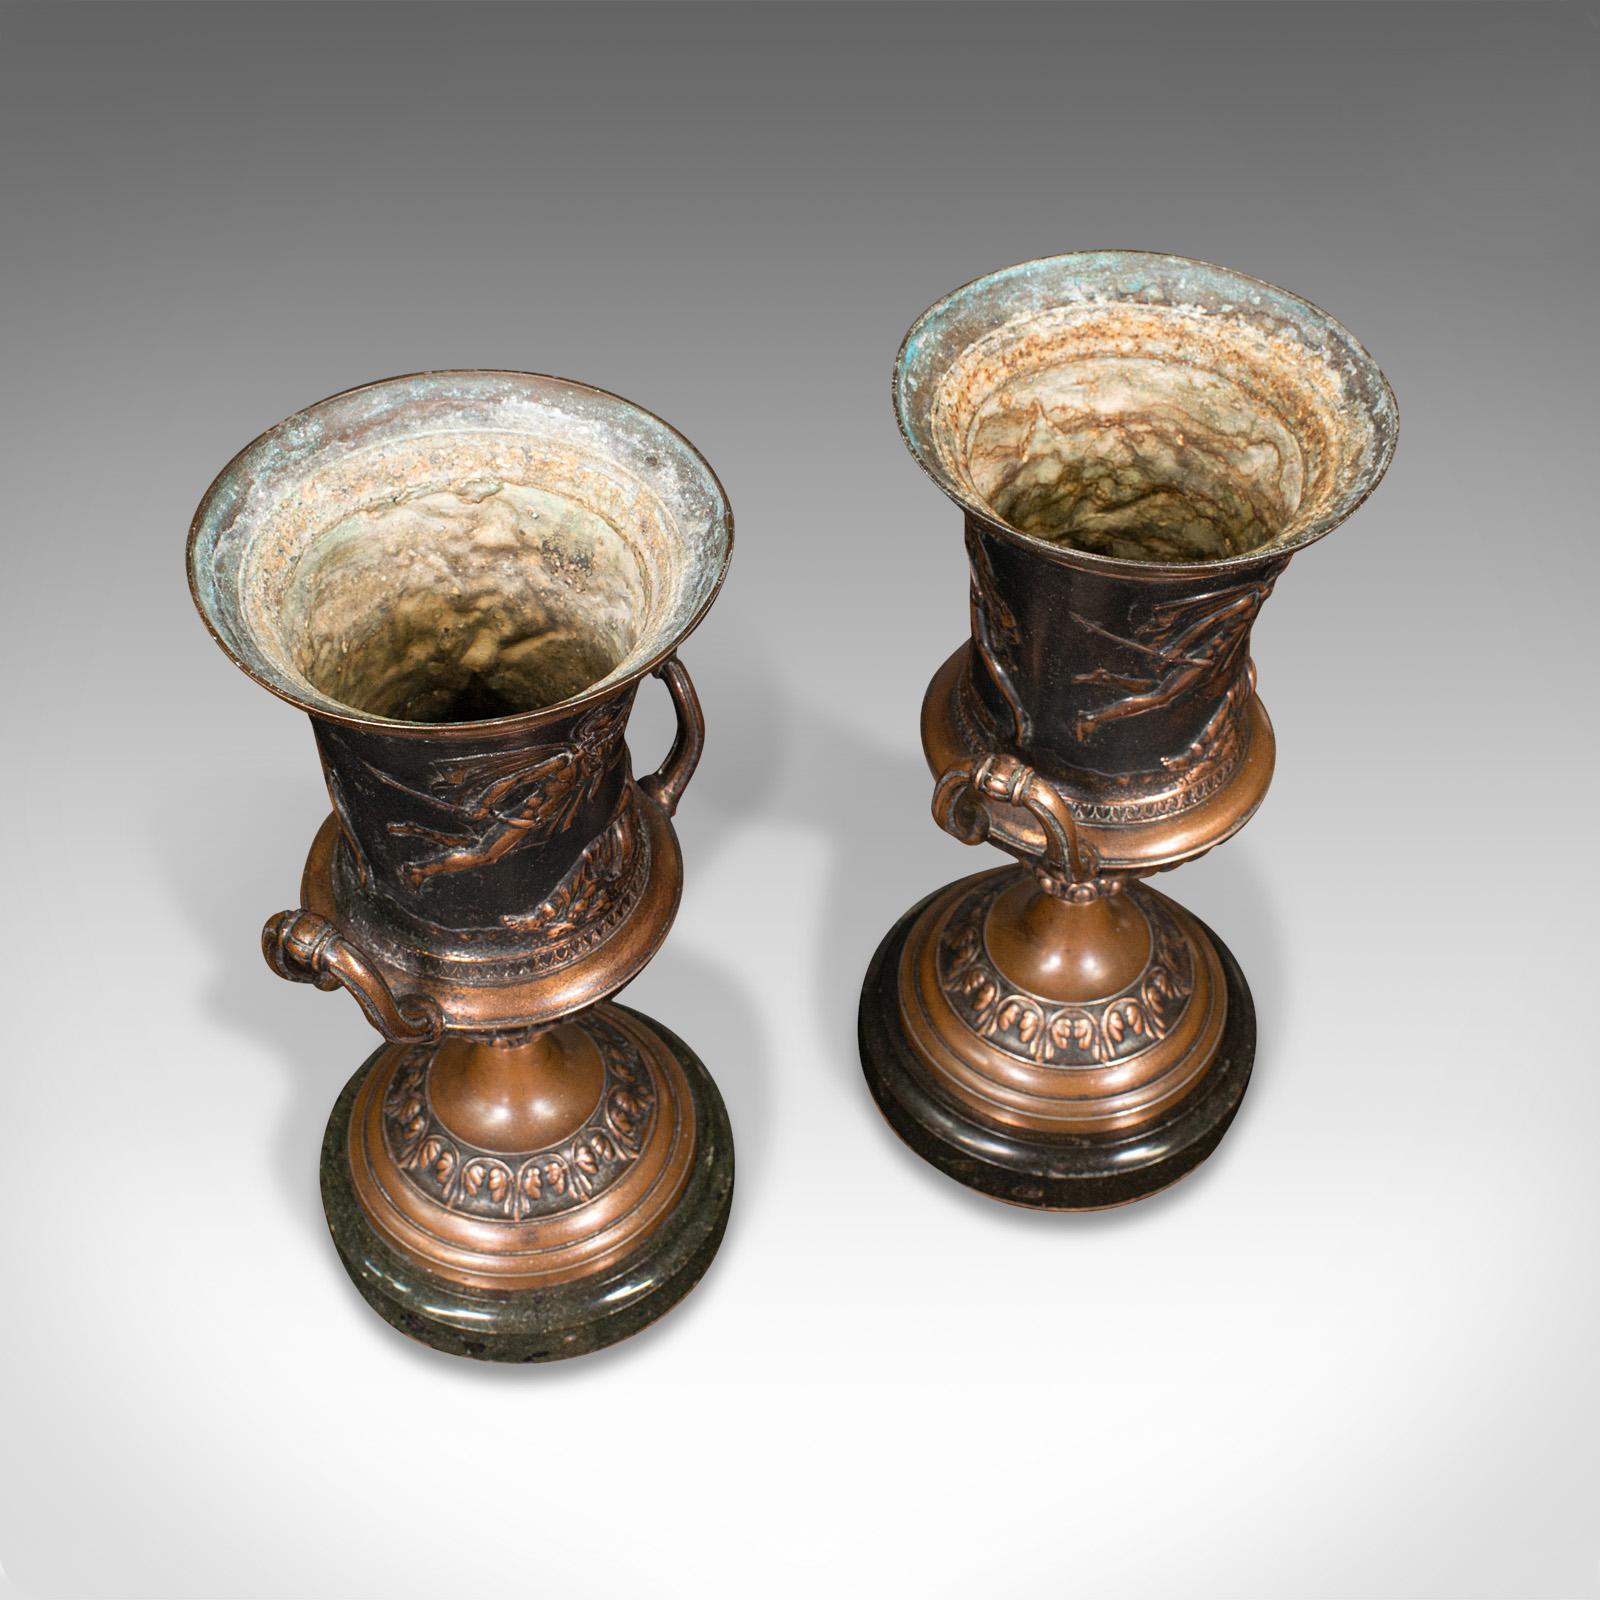 Pair, Antique Grand Tour Urns, Italian, Decorative Vase, Roman Taste, Victorian For Sale 2